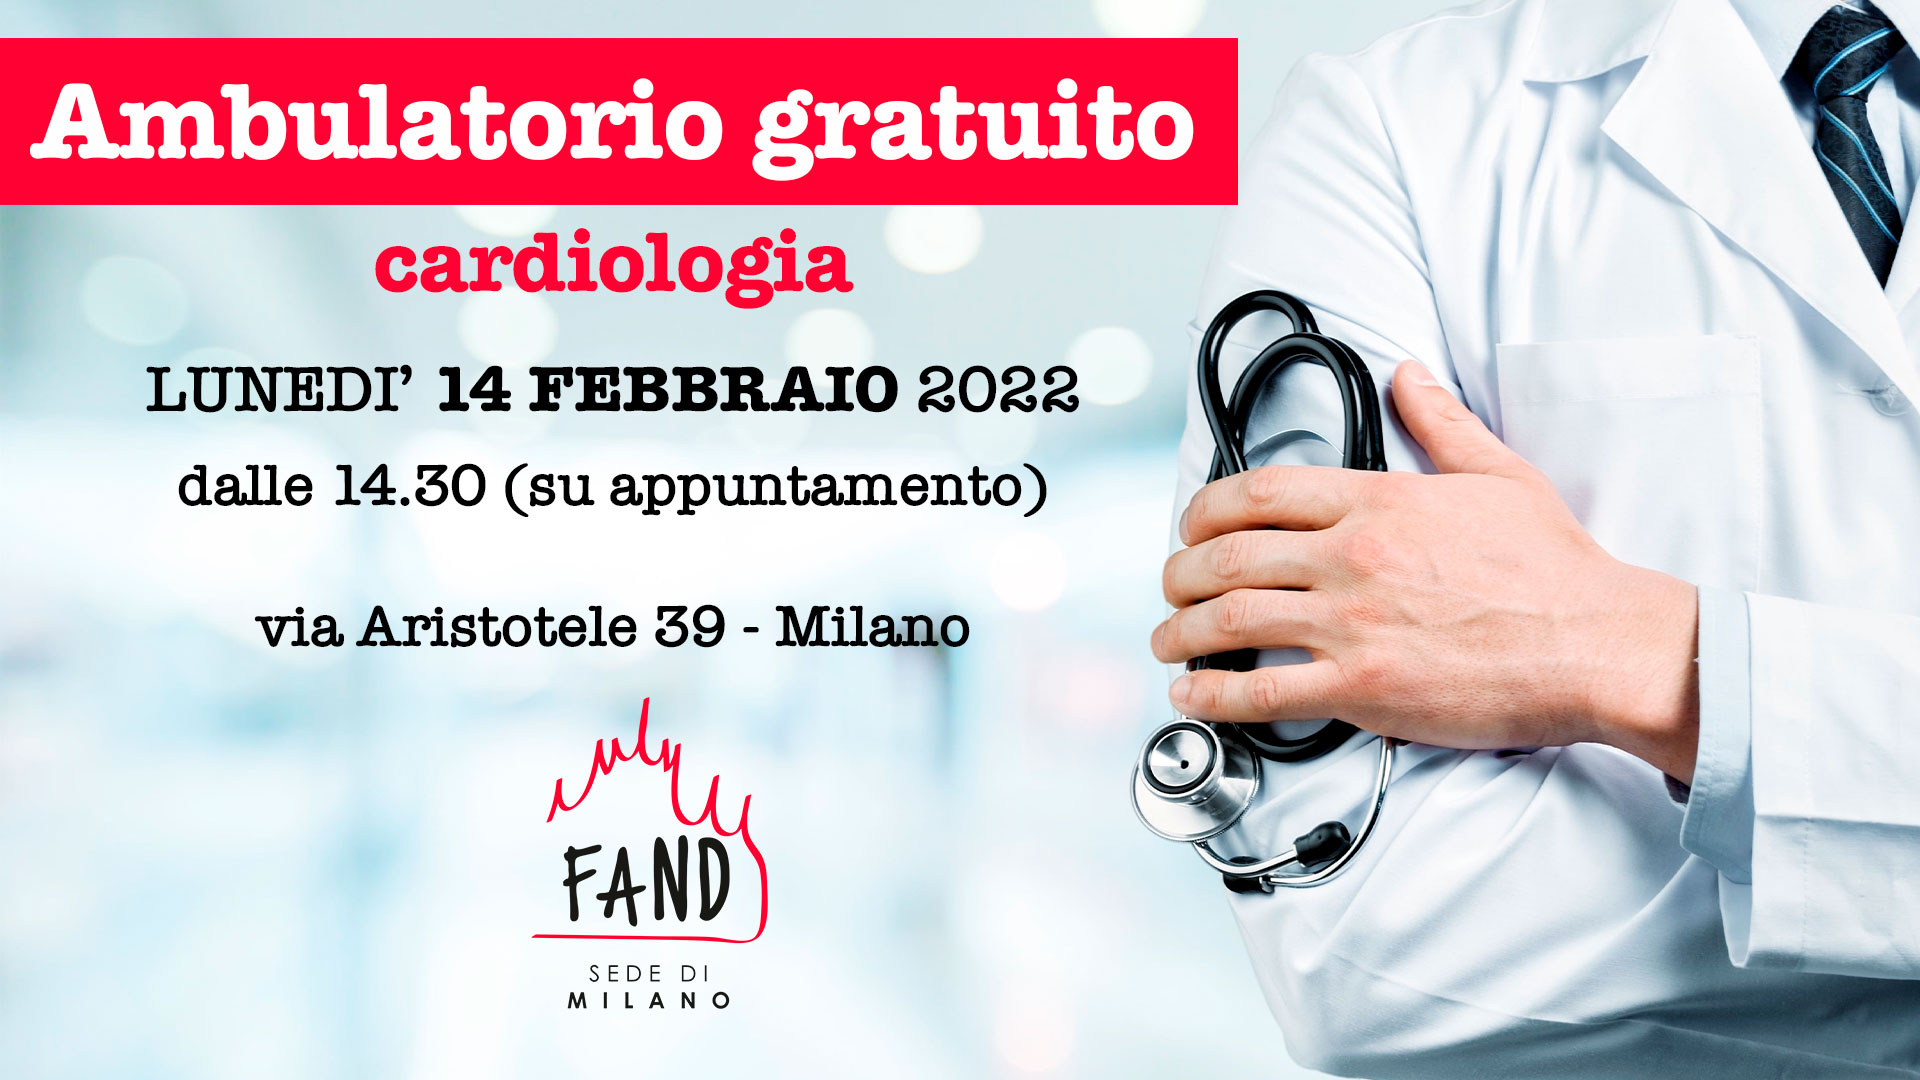 14 feb 2022 - Ambulatorio gratuito - cardiologia